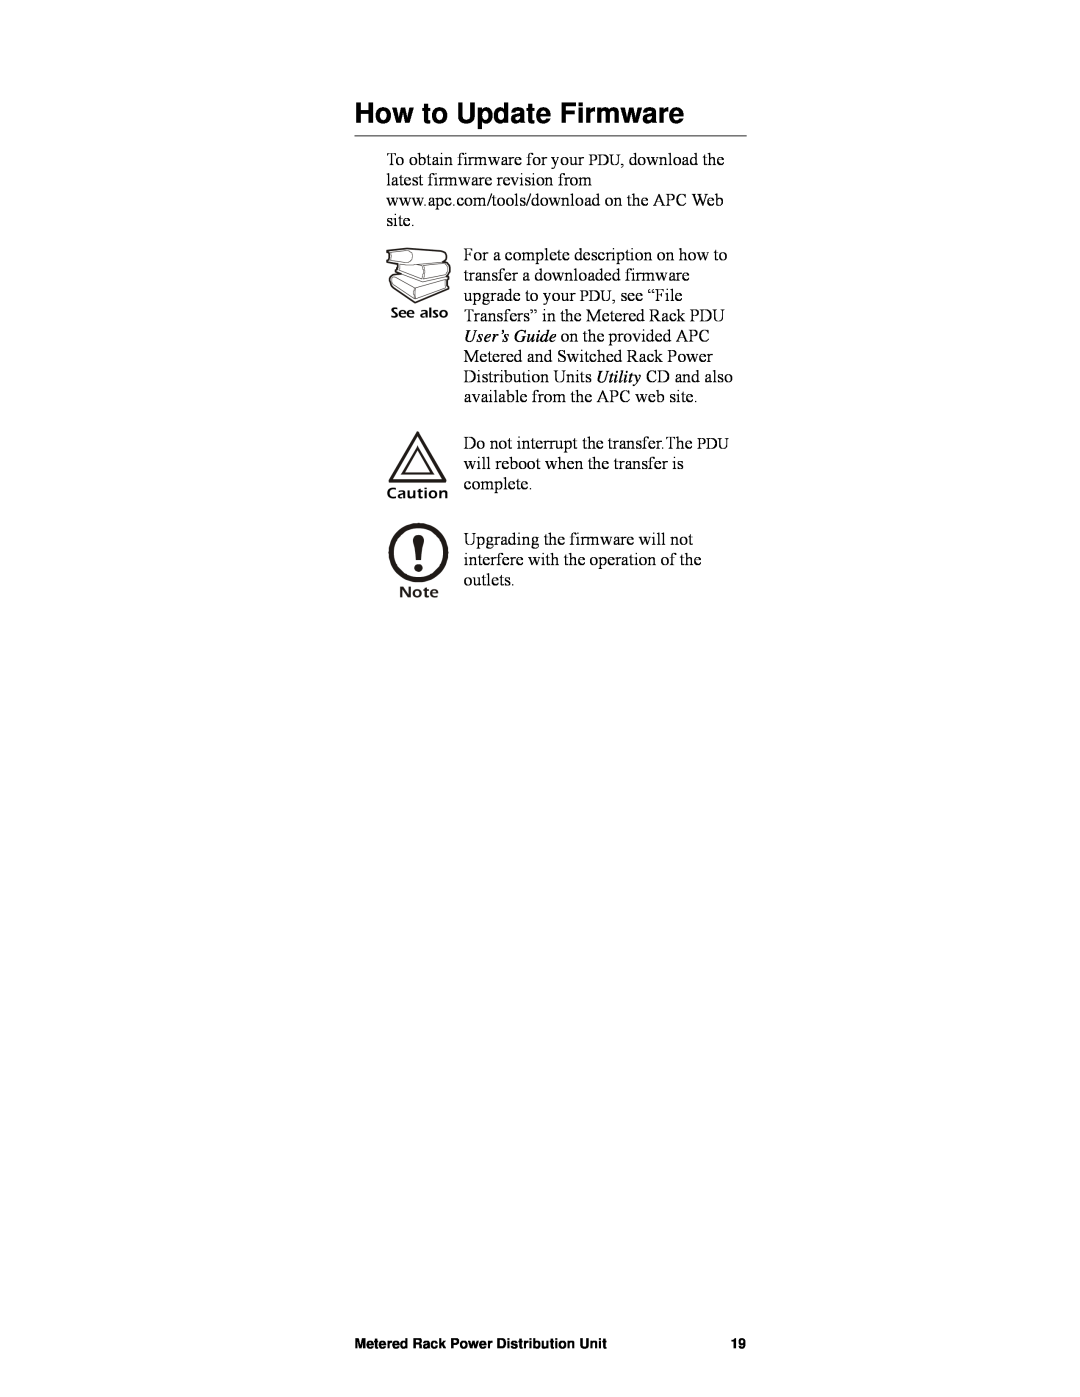 APC pdu0123b, AP7820 manual How to Update Firmware 